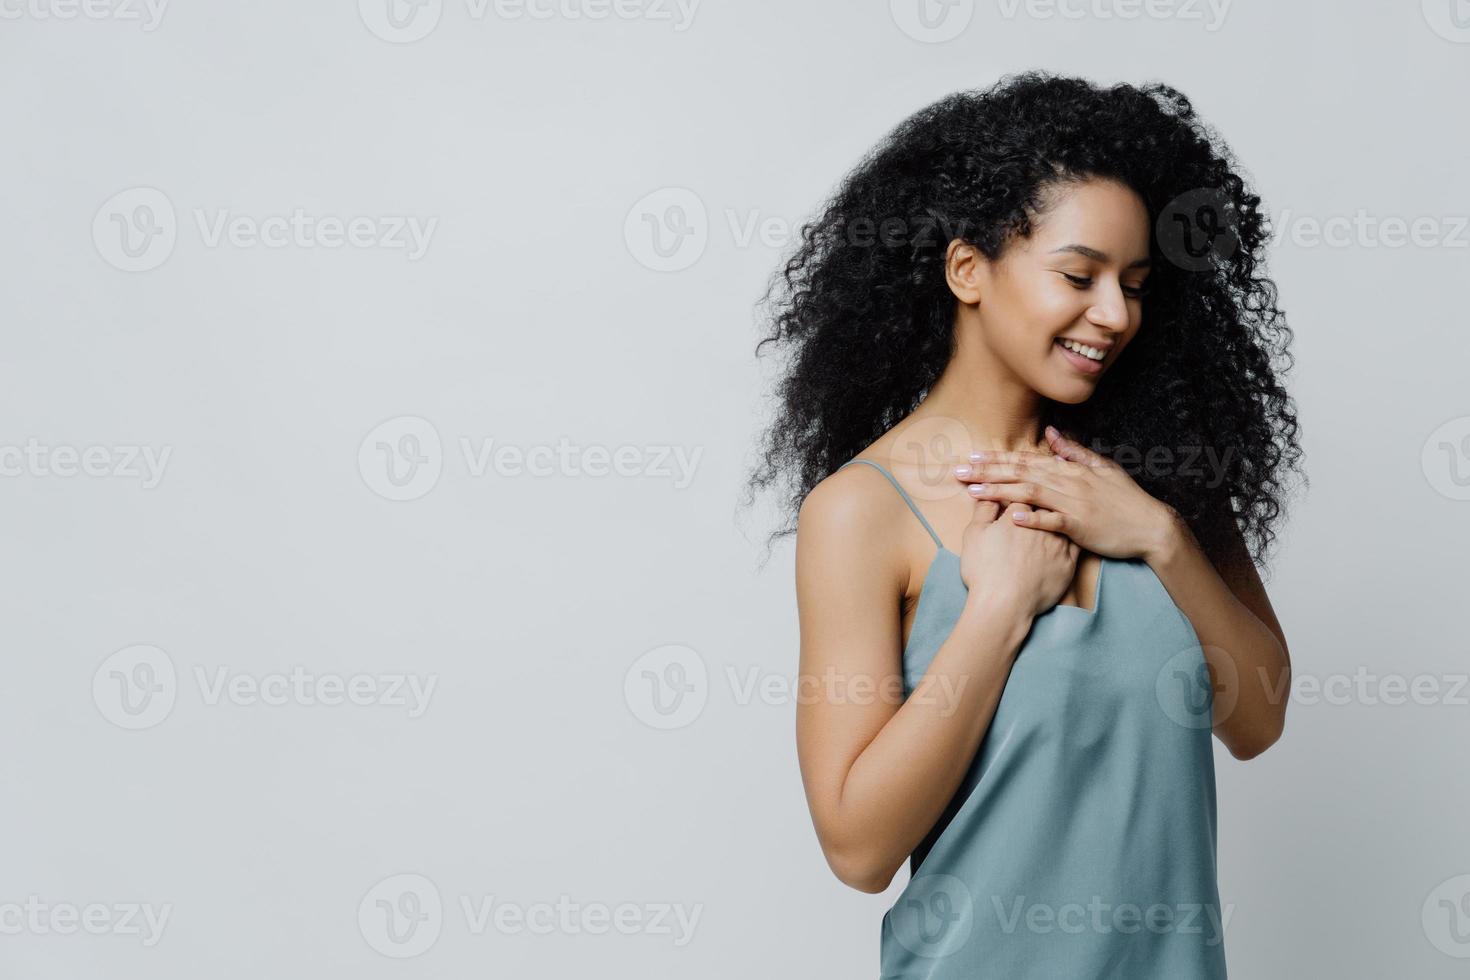 profil av drömmande romantisk etnisk kvinna med afrofrisyr, klädd i nattkläder, håller händerna på bröstet, minns ett mycket trevligt ögonblick i livet ler ömt med slutna ögon uttrycker sanna känslor foto